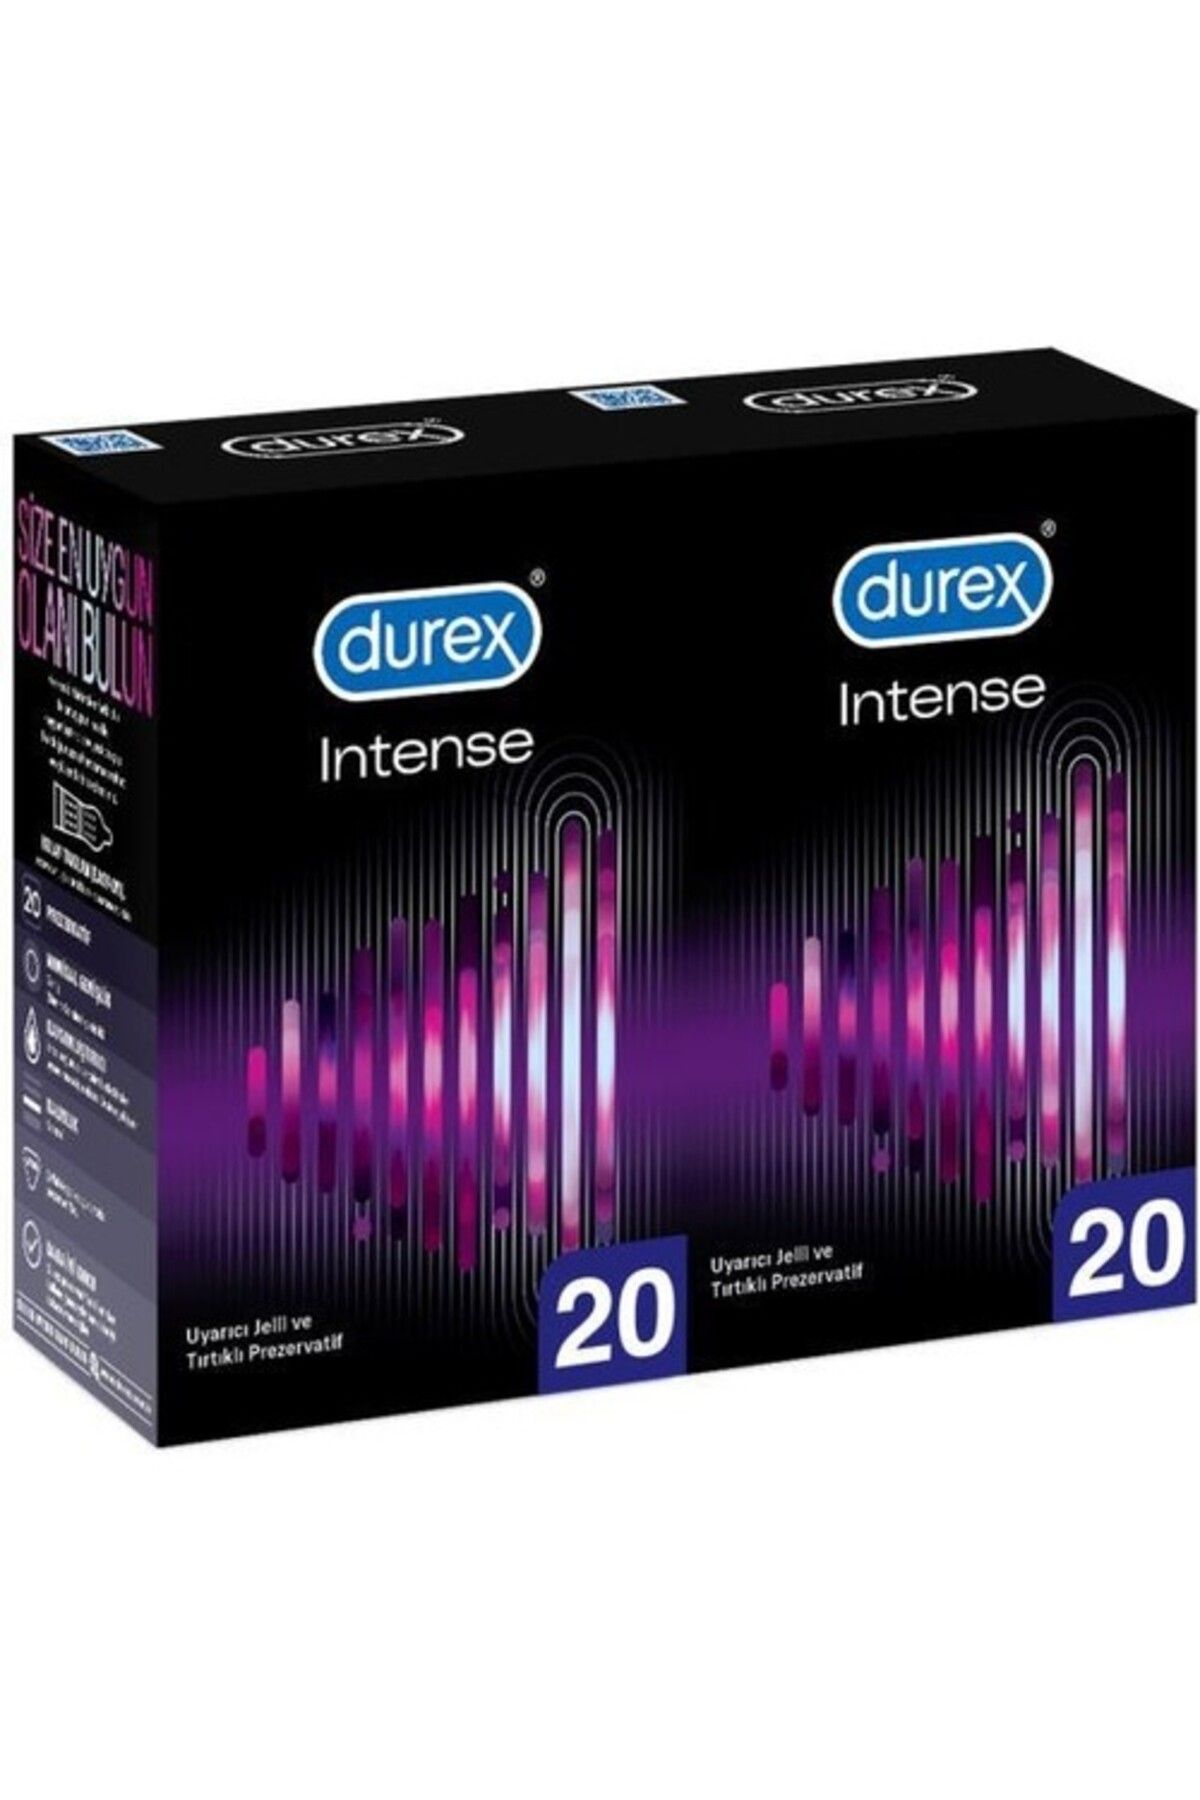 Durex Intense 40'lı Uyarıcı Jelli ve Tırtıklı Prezervatif